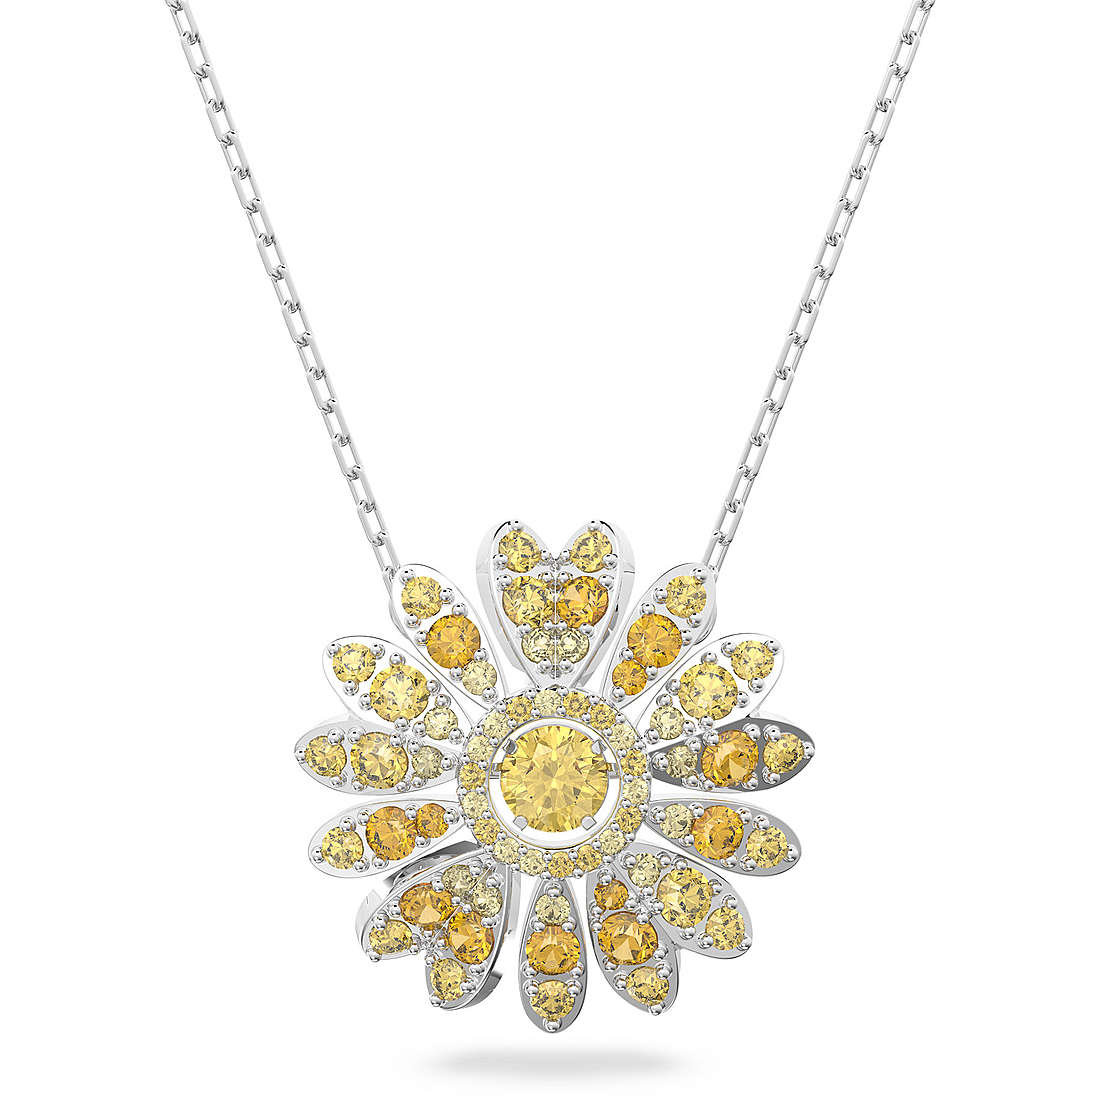 necklace woman jewellery Swarovski Eternal Flower 5642869